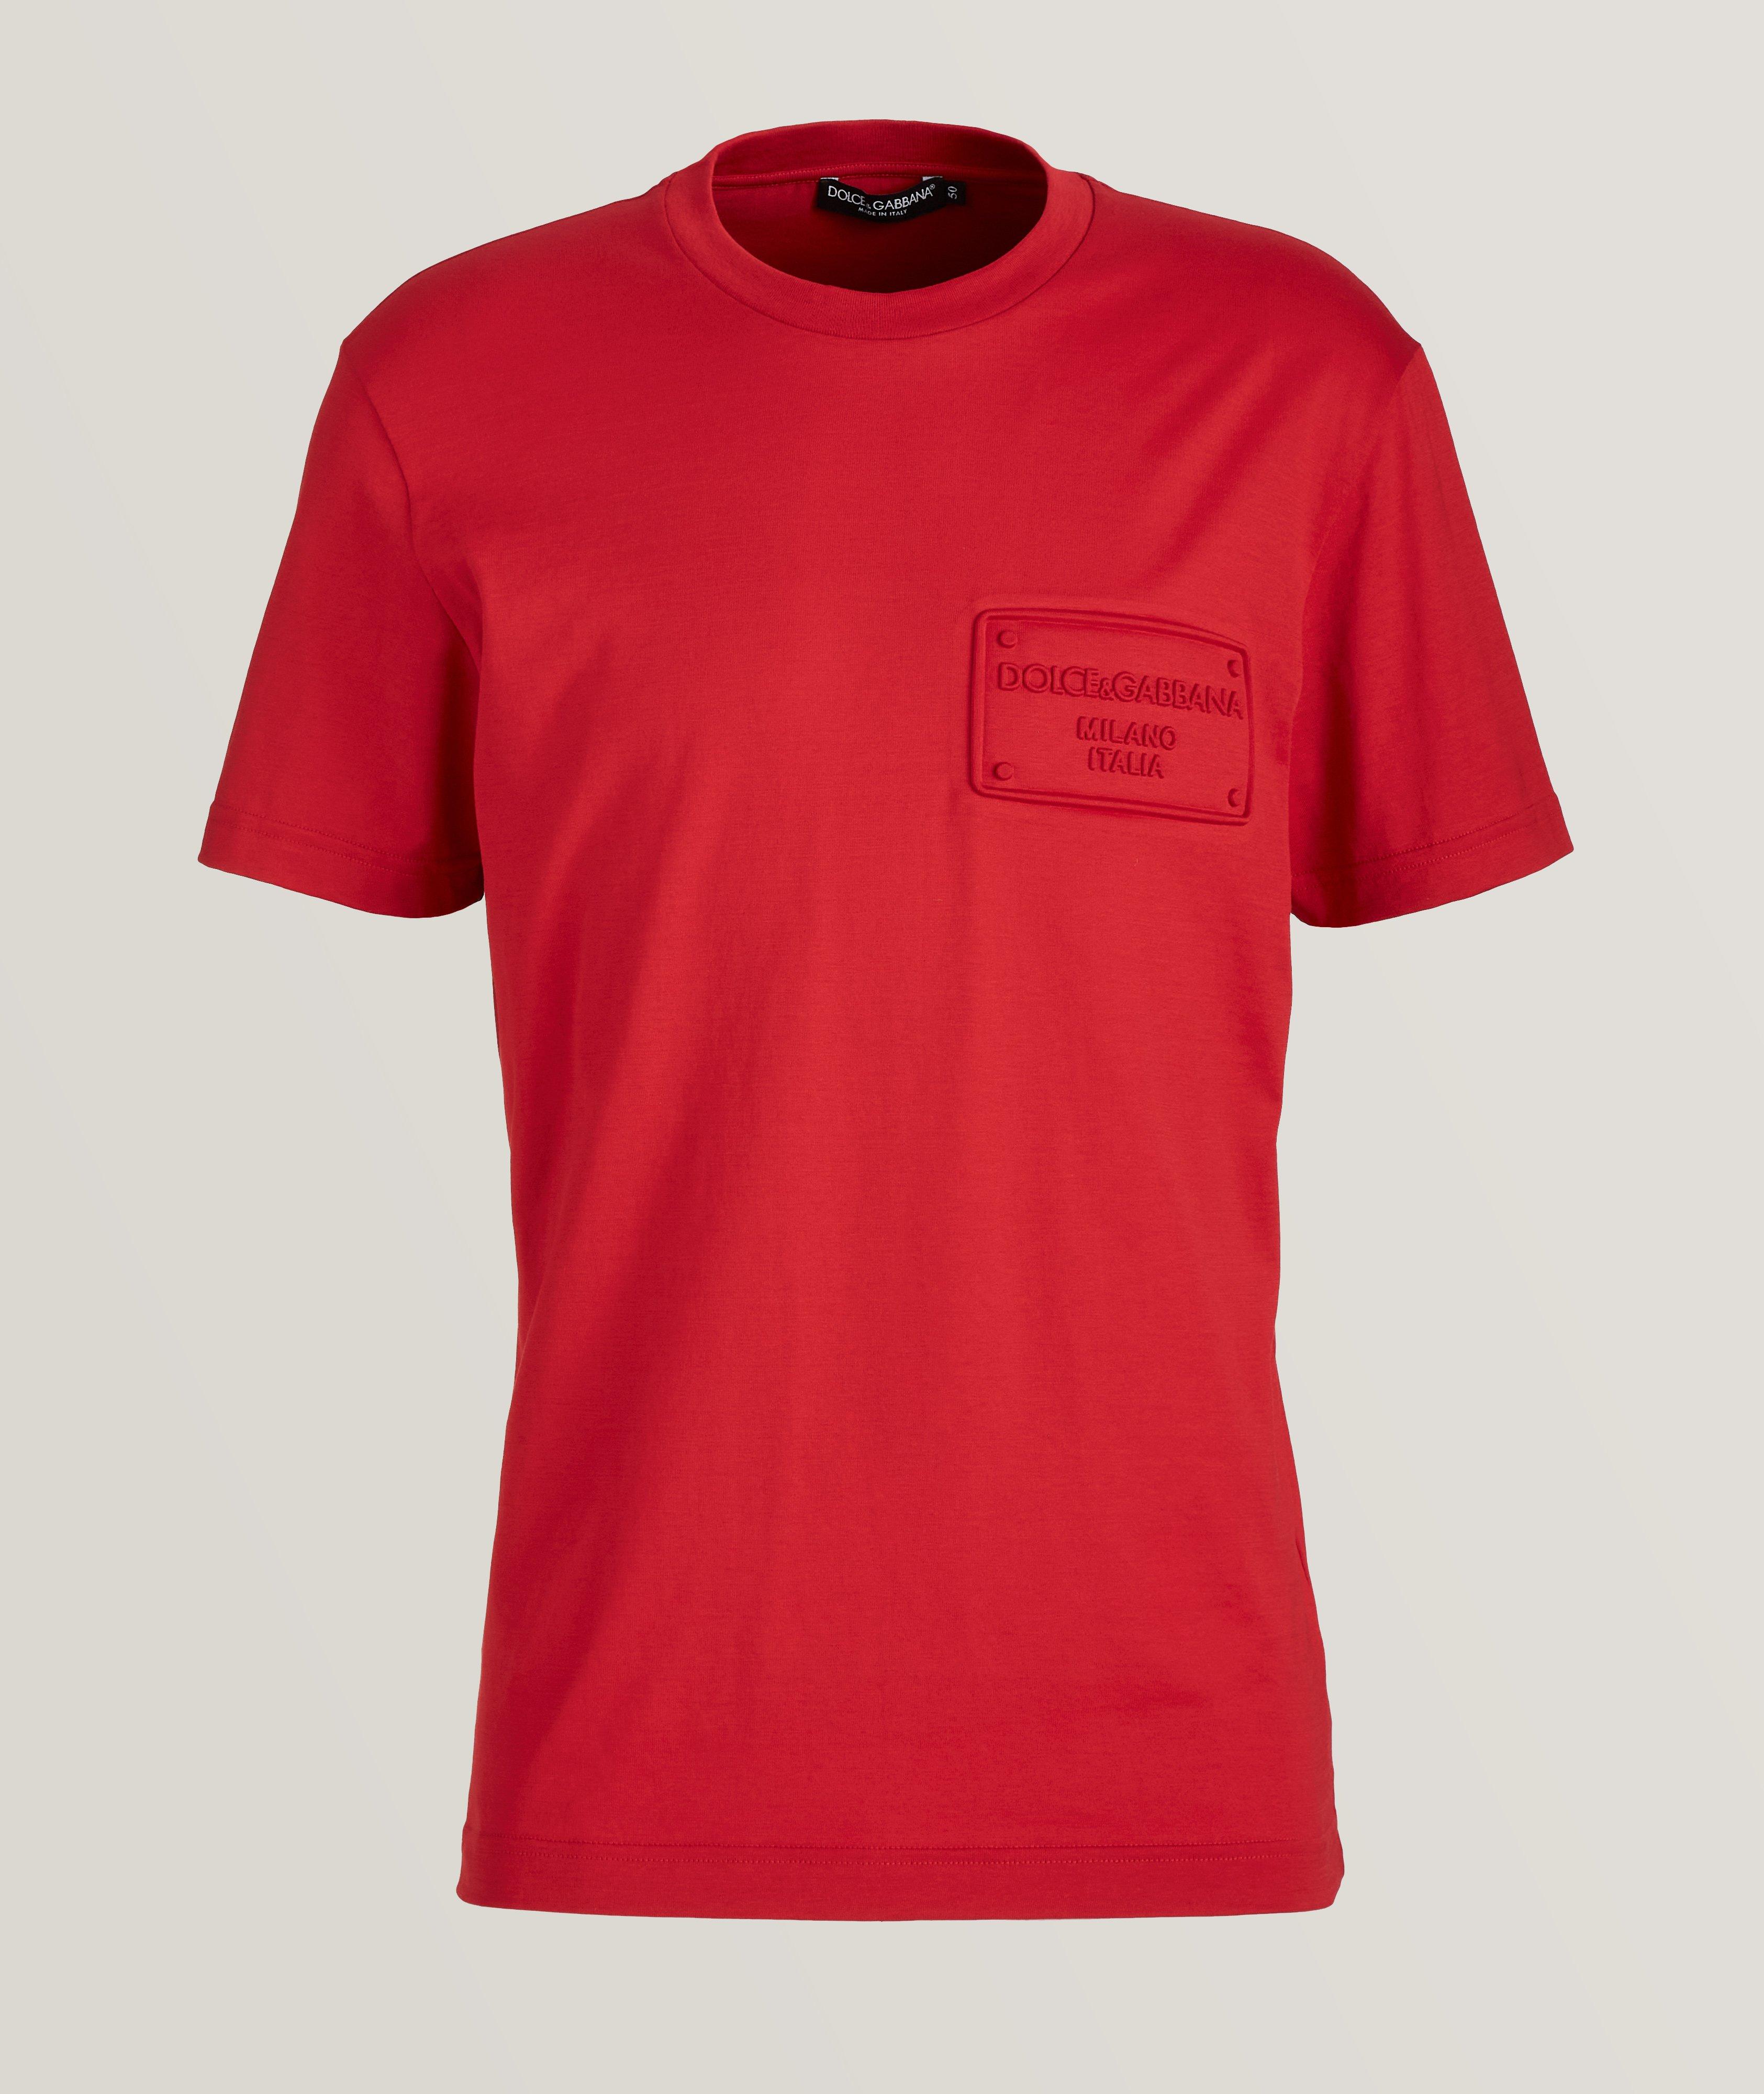 T-shirt en coton avec logo brodé image 0